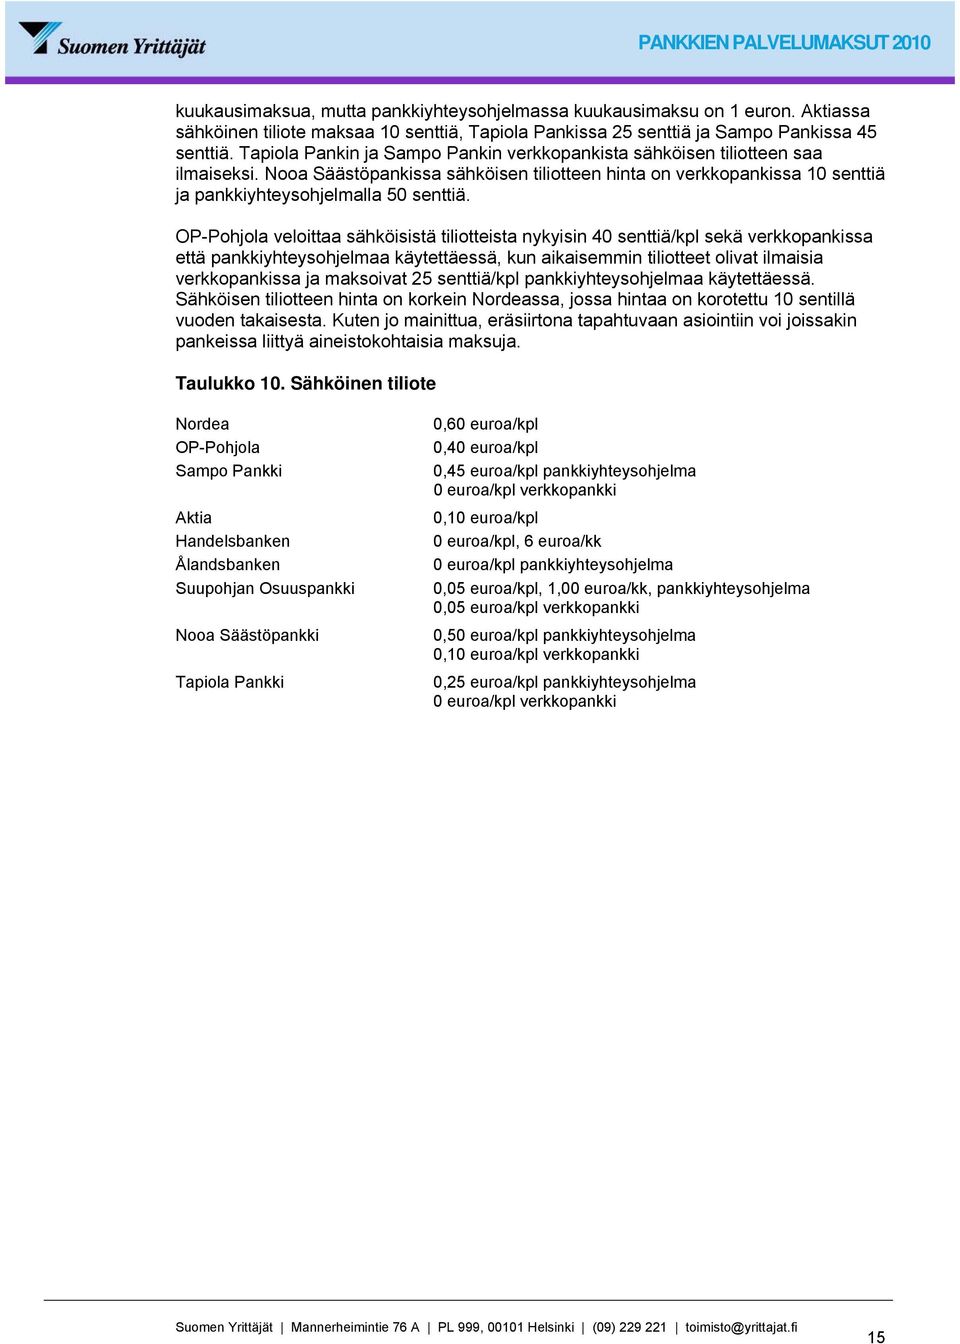 Pankkien palvelumaksut - PDF Ilmainen lataus